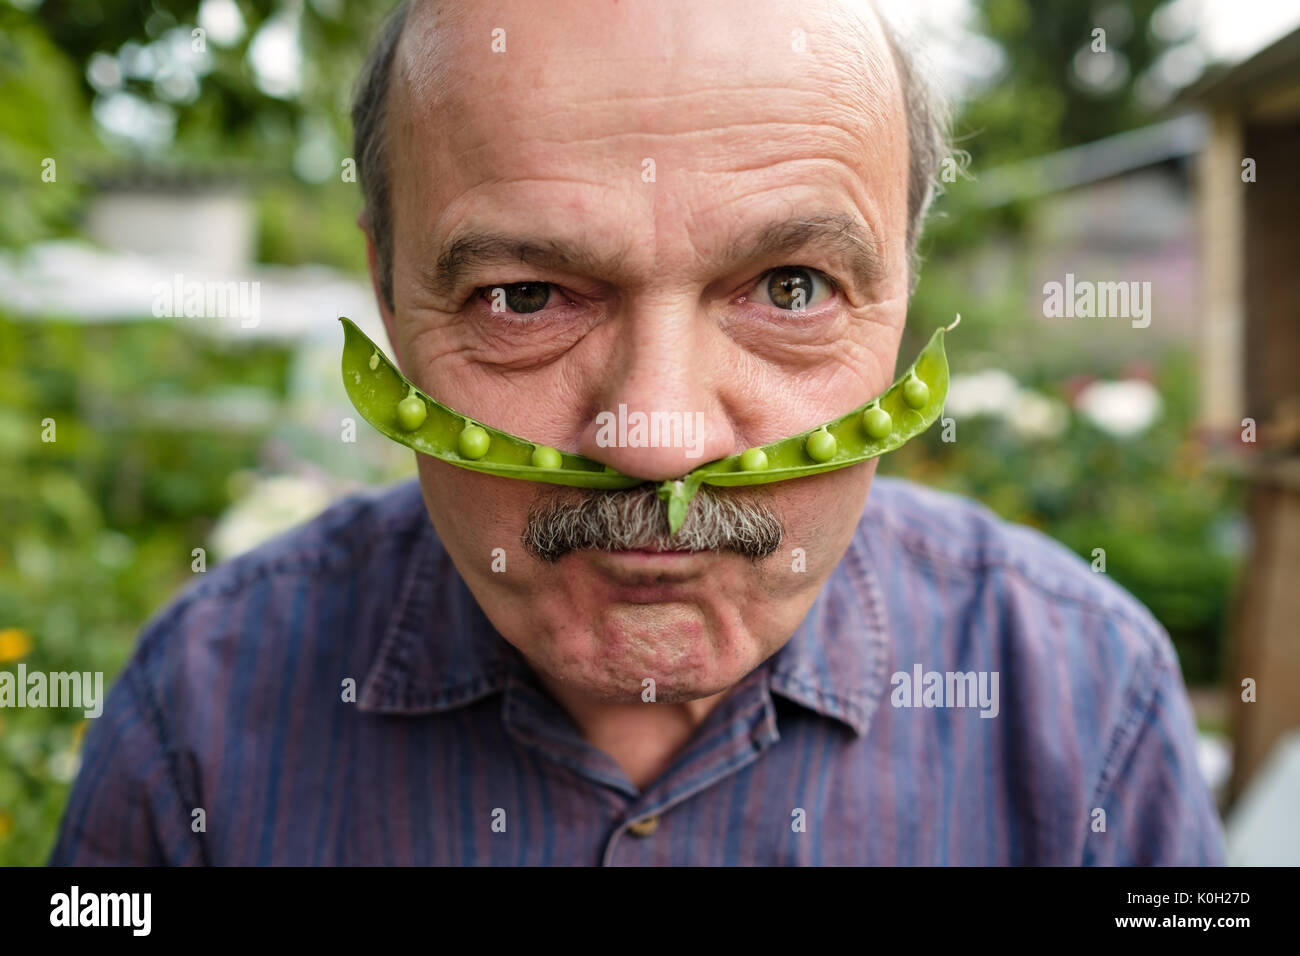 Un anciano es travesuras. Posee una vaina de guisante cerca de su cara como un bigote Foto de stock